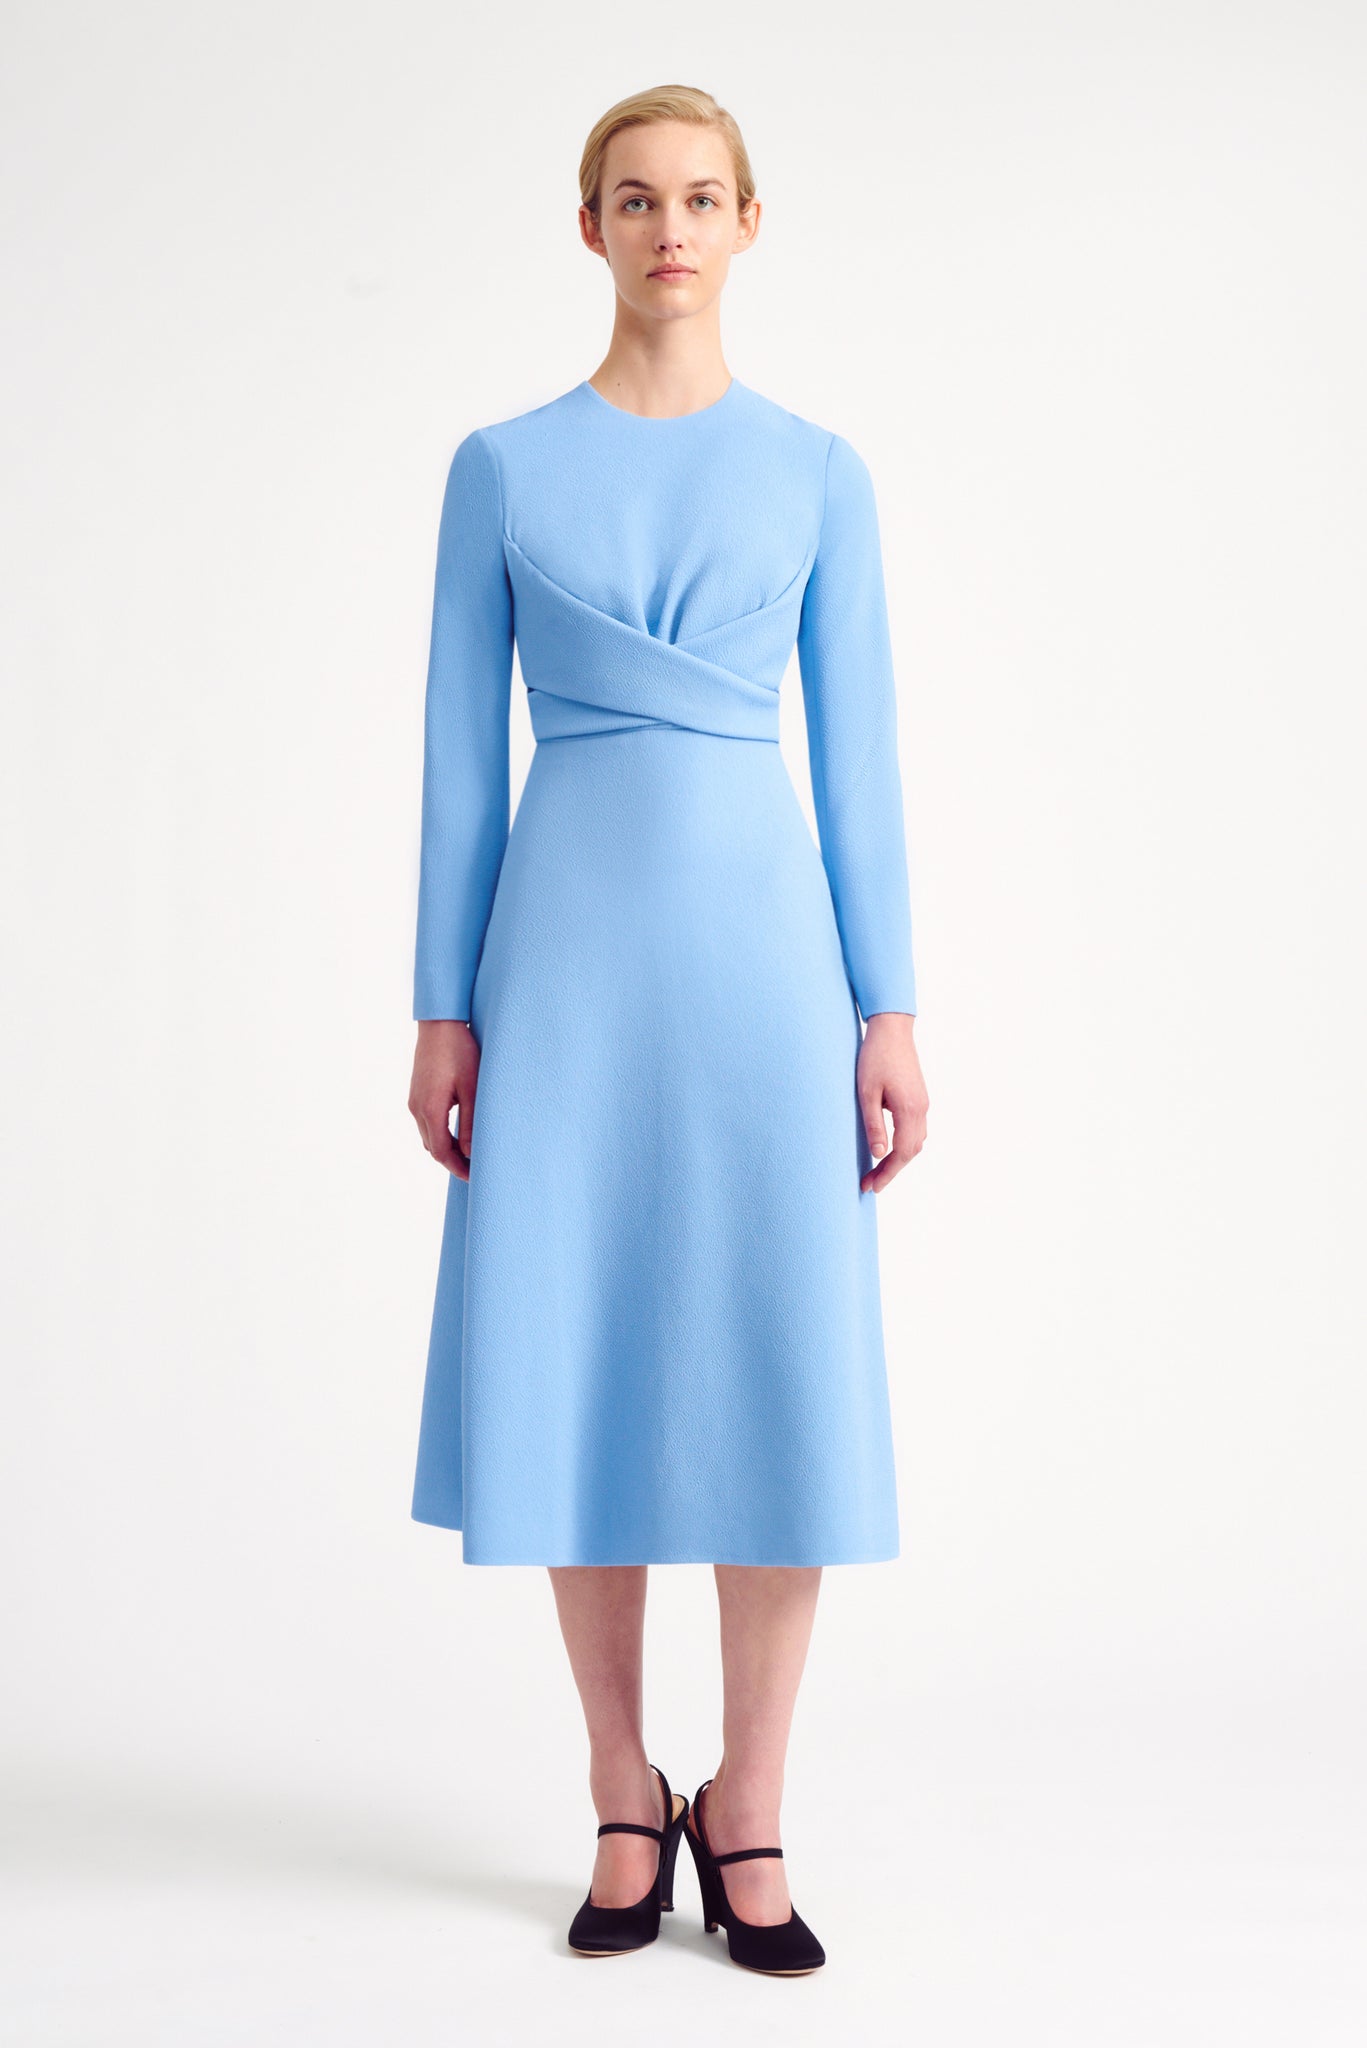 Emilia Wickstead | Official Online Store | Luxury Designer Womenswear